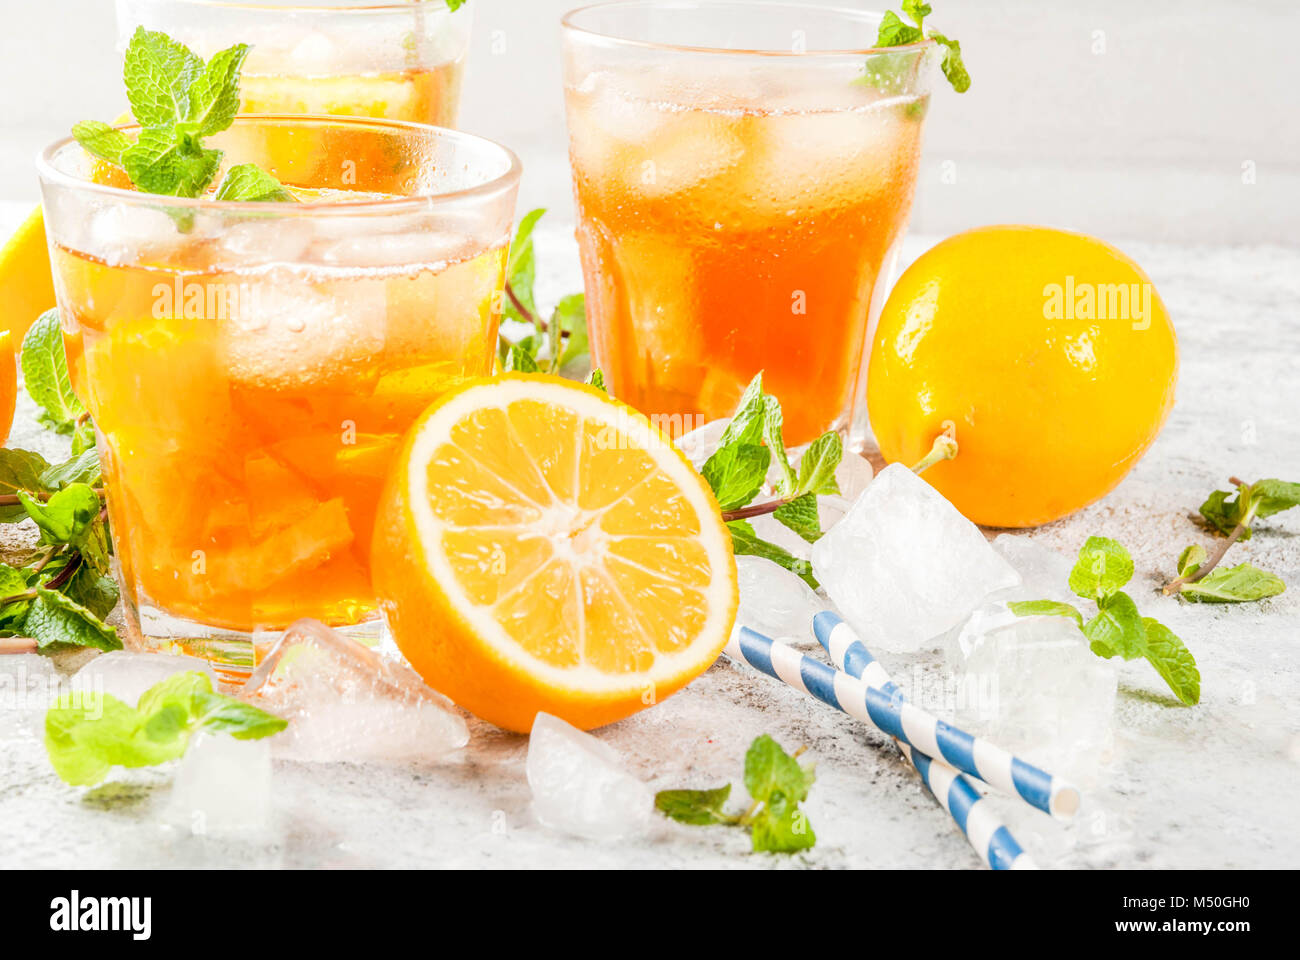 Чай с мятой и лимоном спектакль. Айс Лемон минт. Заморозка лимона с мятой. Атом чай лимон мята. Замороженный чай фото.